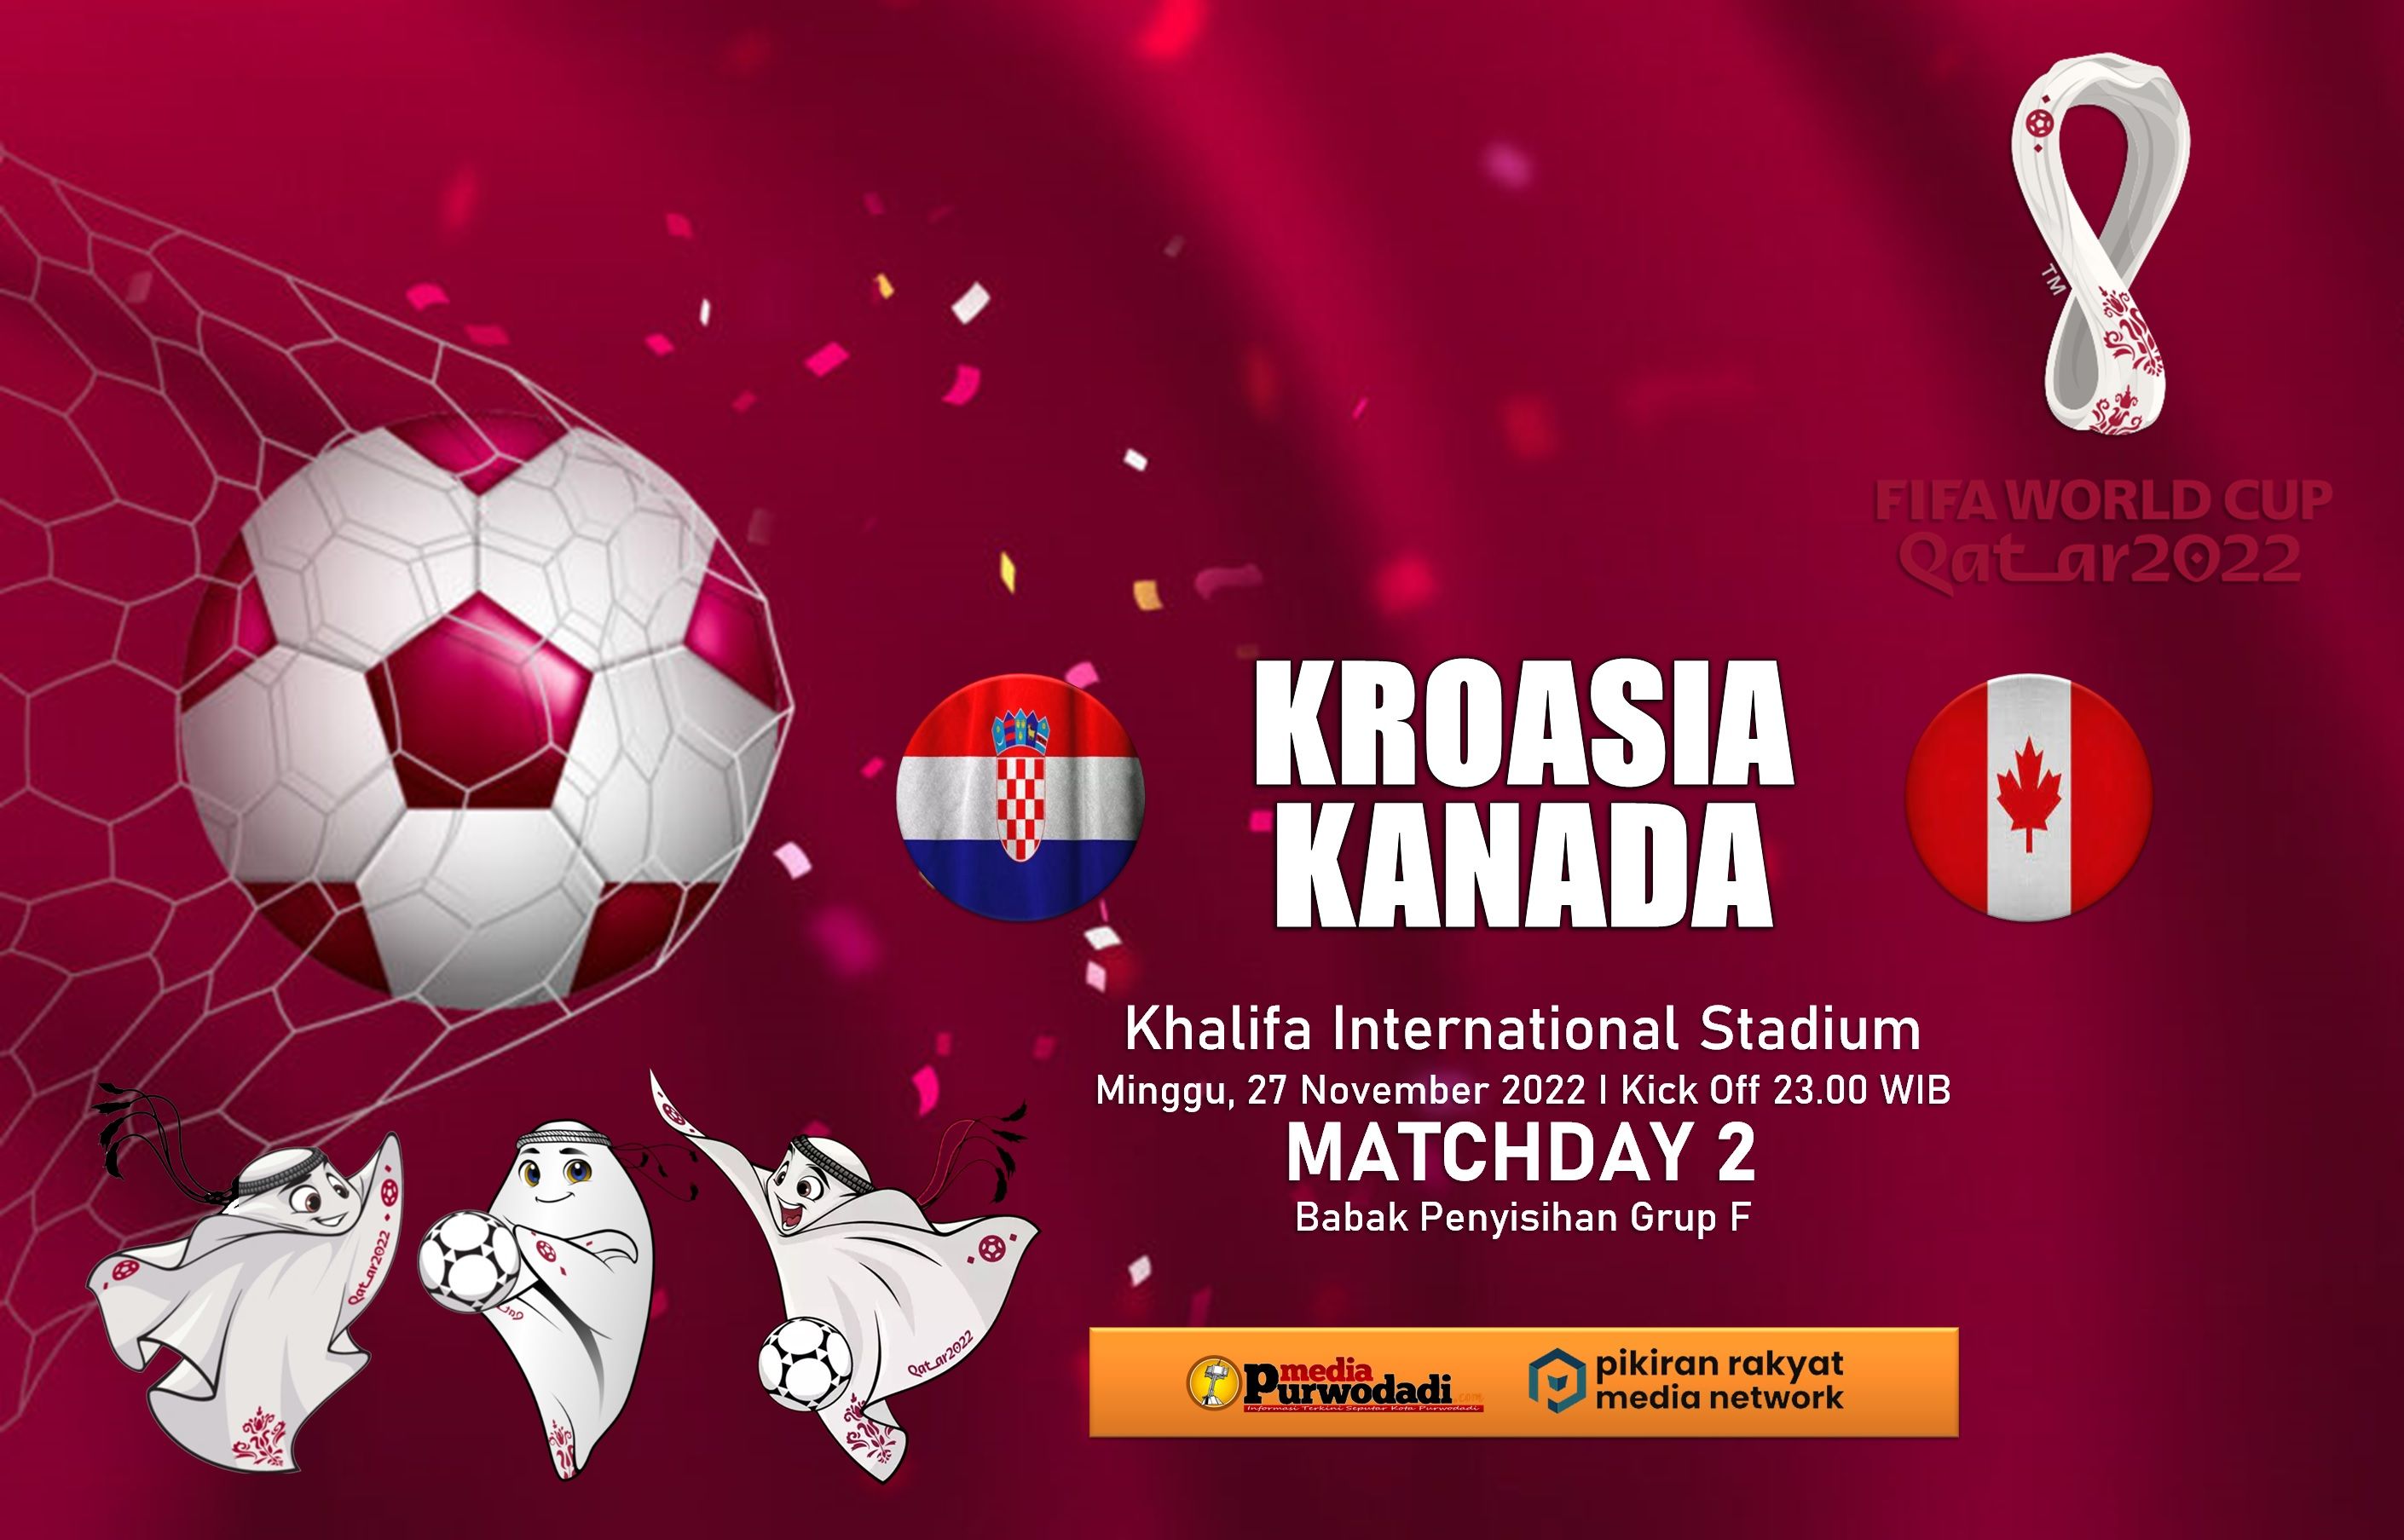 Kroasia akan berhadapan dengan Kanada dalam Matchday 2 babak penyisihan Grup F Piala Dunia Qatar 2022 di Khalifa International Stadium.